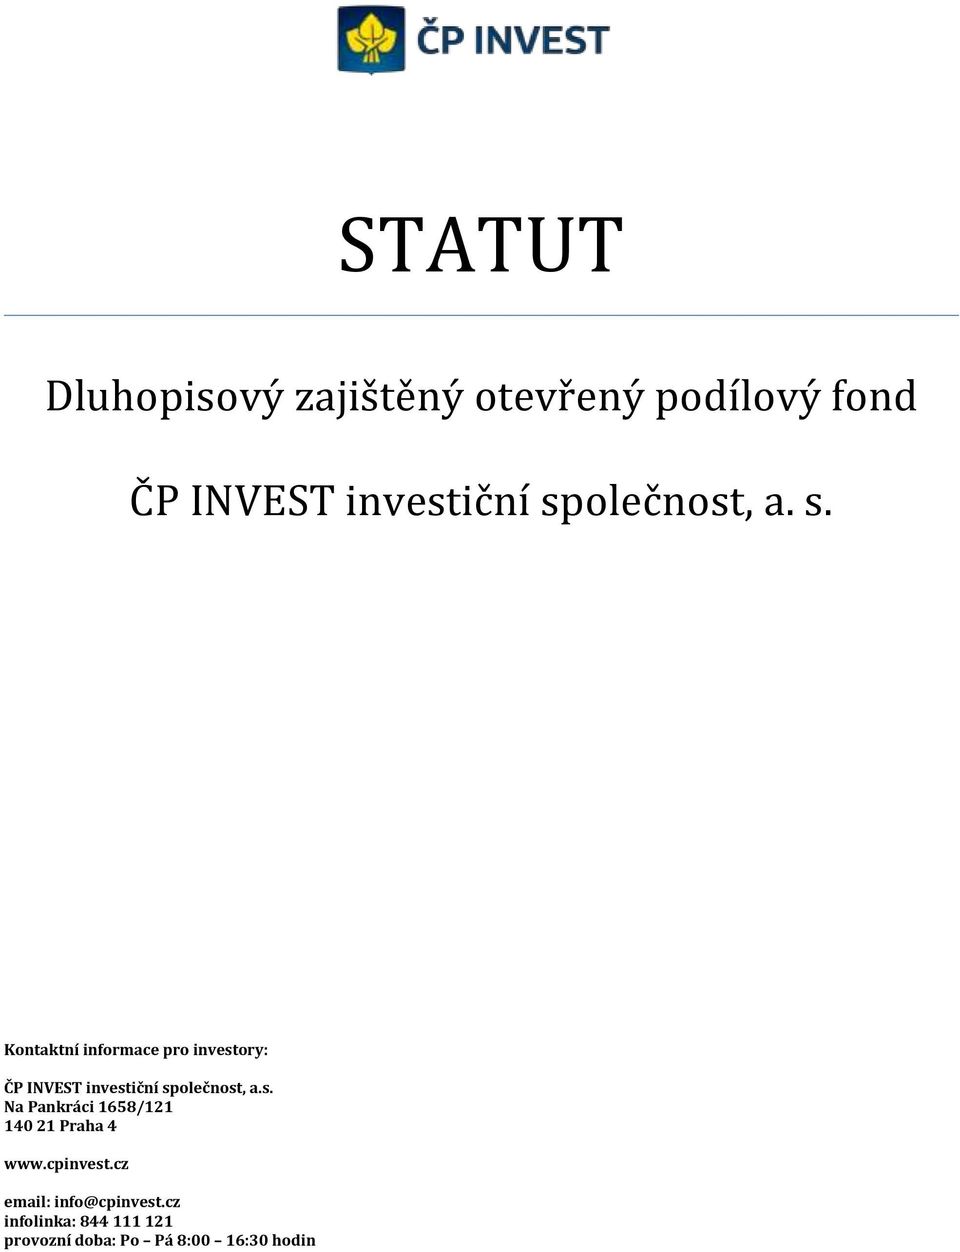 Kontaktní informace pro investory: ČP INVEST investiční společnost, a.s. Na Pankráci 1658/121 140 21 Praha 4 www.